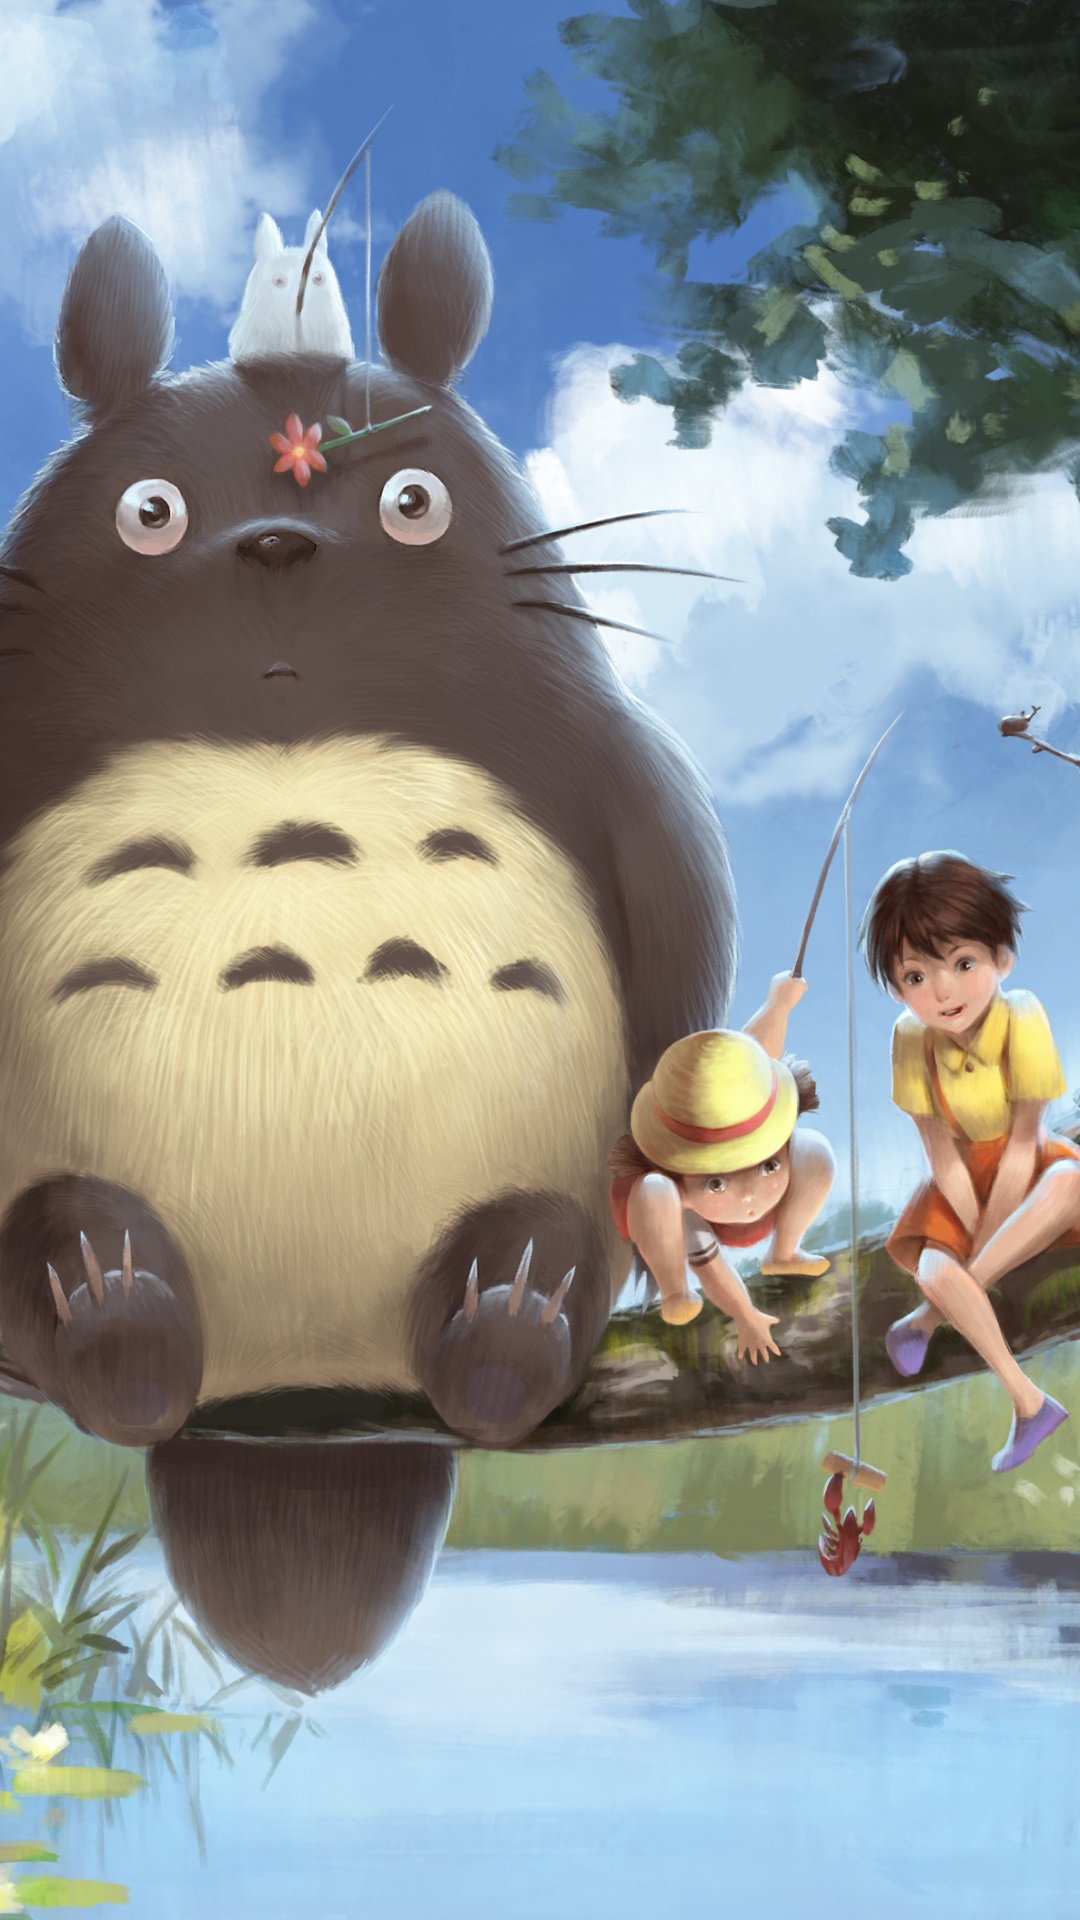 Wallpaper / Anime My Neighbor Totoro Phone Wallpaper, Satsuki Kusakabe, Mei Kusakabe, Mini Totoro (My Neighbor Totoro), Totoro (My Neighbor Totoro), 1080x1920 free download